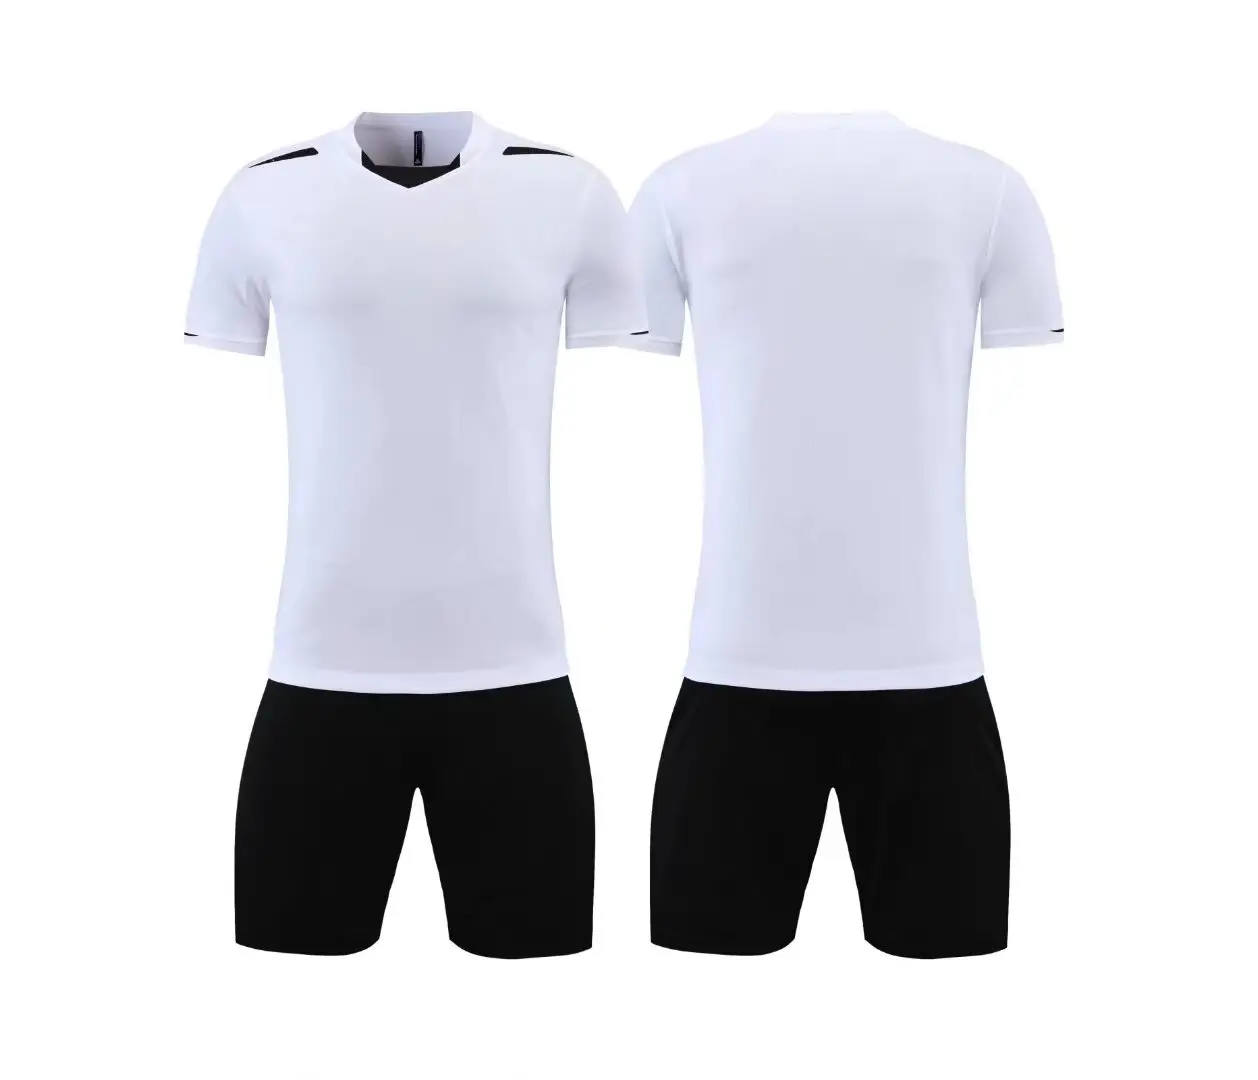 Uniforme de fútbol barato de secado rápido para chico y hombre, Conjunto de camiseta de fútbol con nombre y número personalizados, novedad